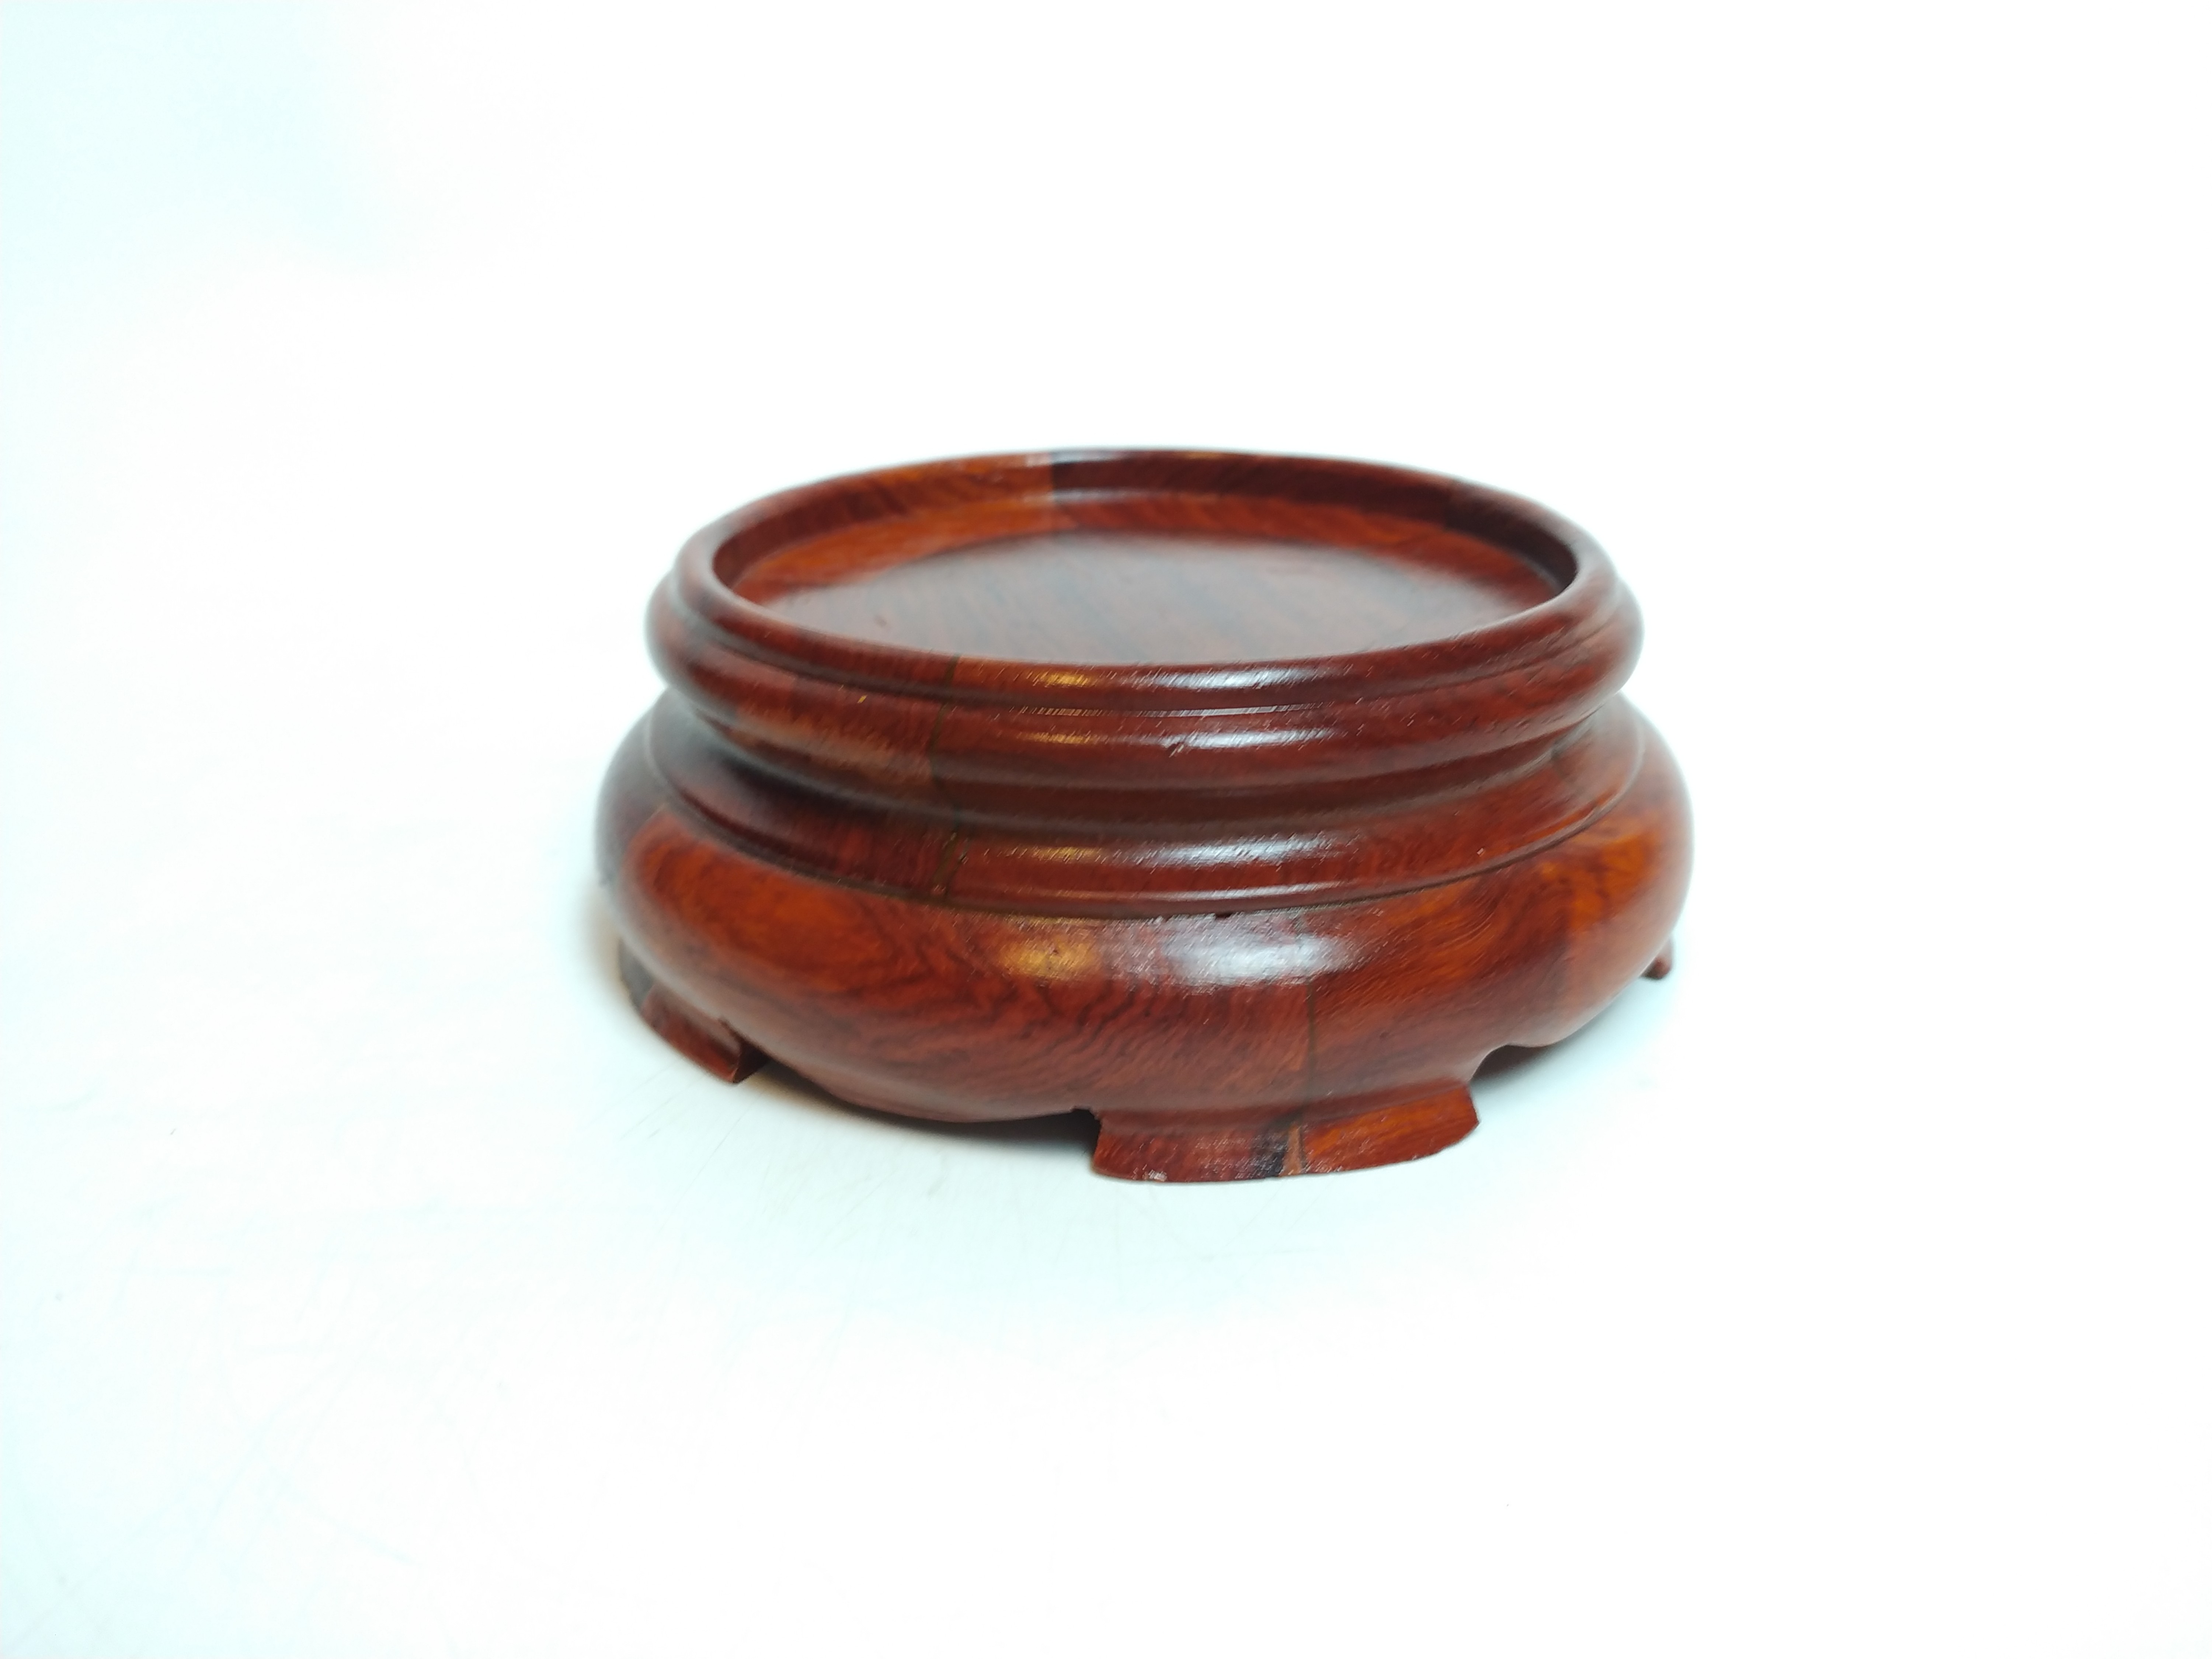 Đế Bát Hương chất liệu gỗ hương (kê bát hương) - Đk 21cm, cao 6.5cm